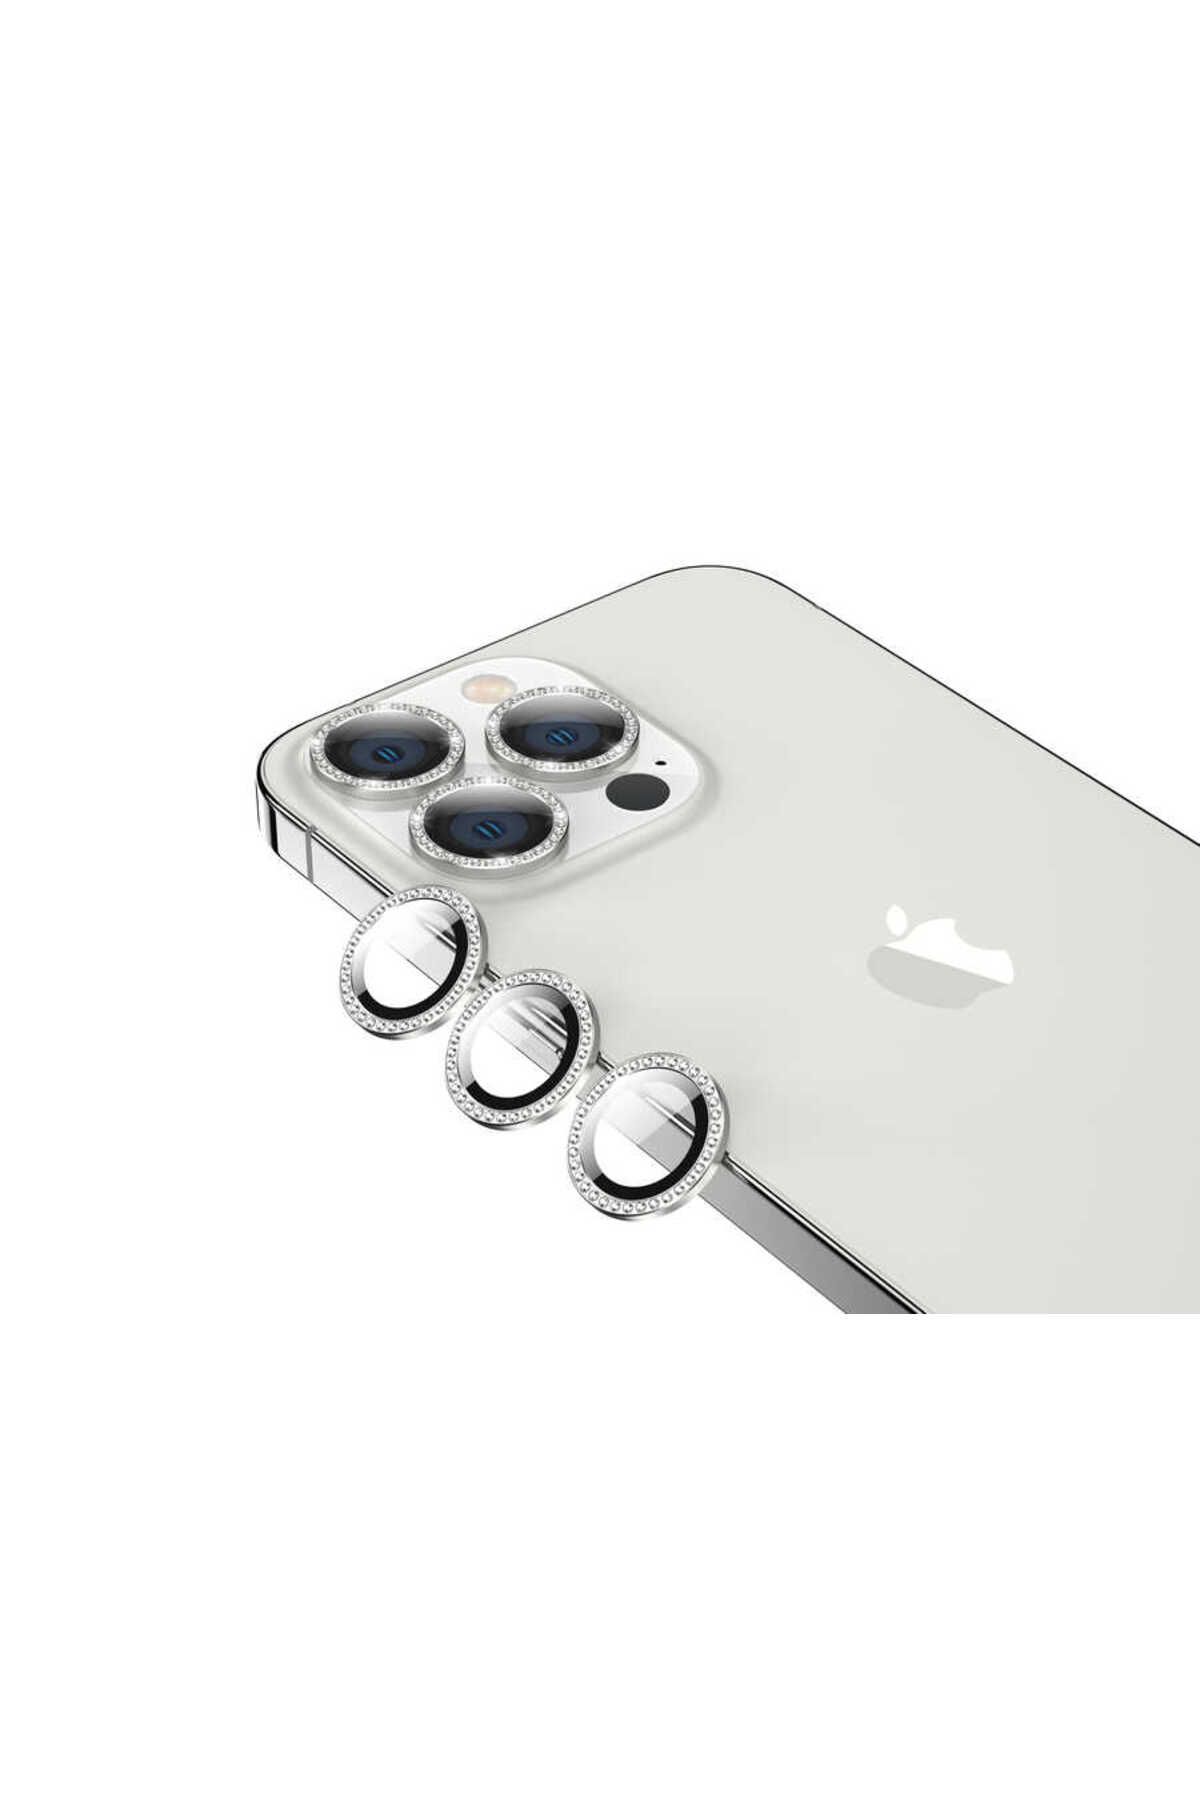 Zore iPhone 13 Pro Uyumlu Baltazar CL-06 Kamera Lens Koruyucu-Gümüş